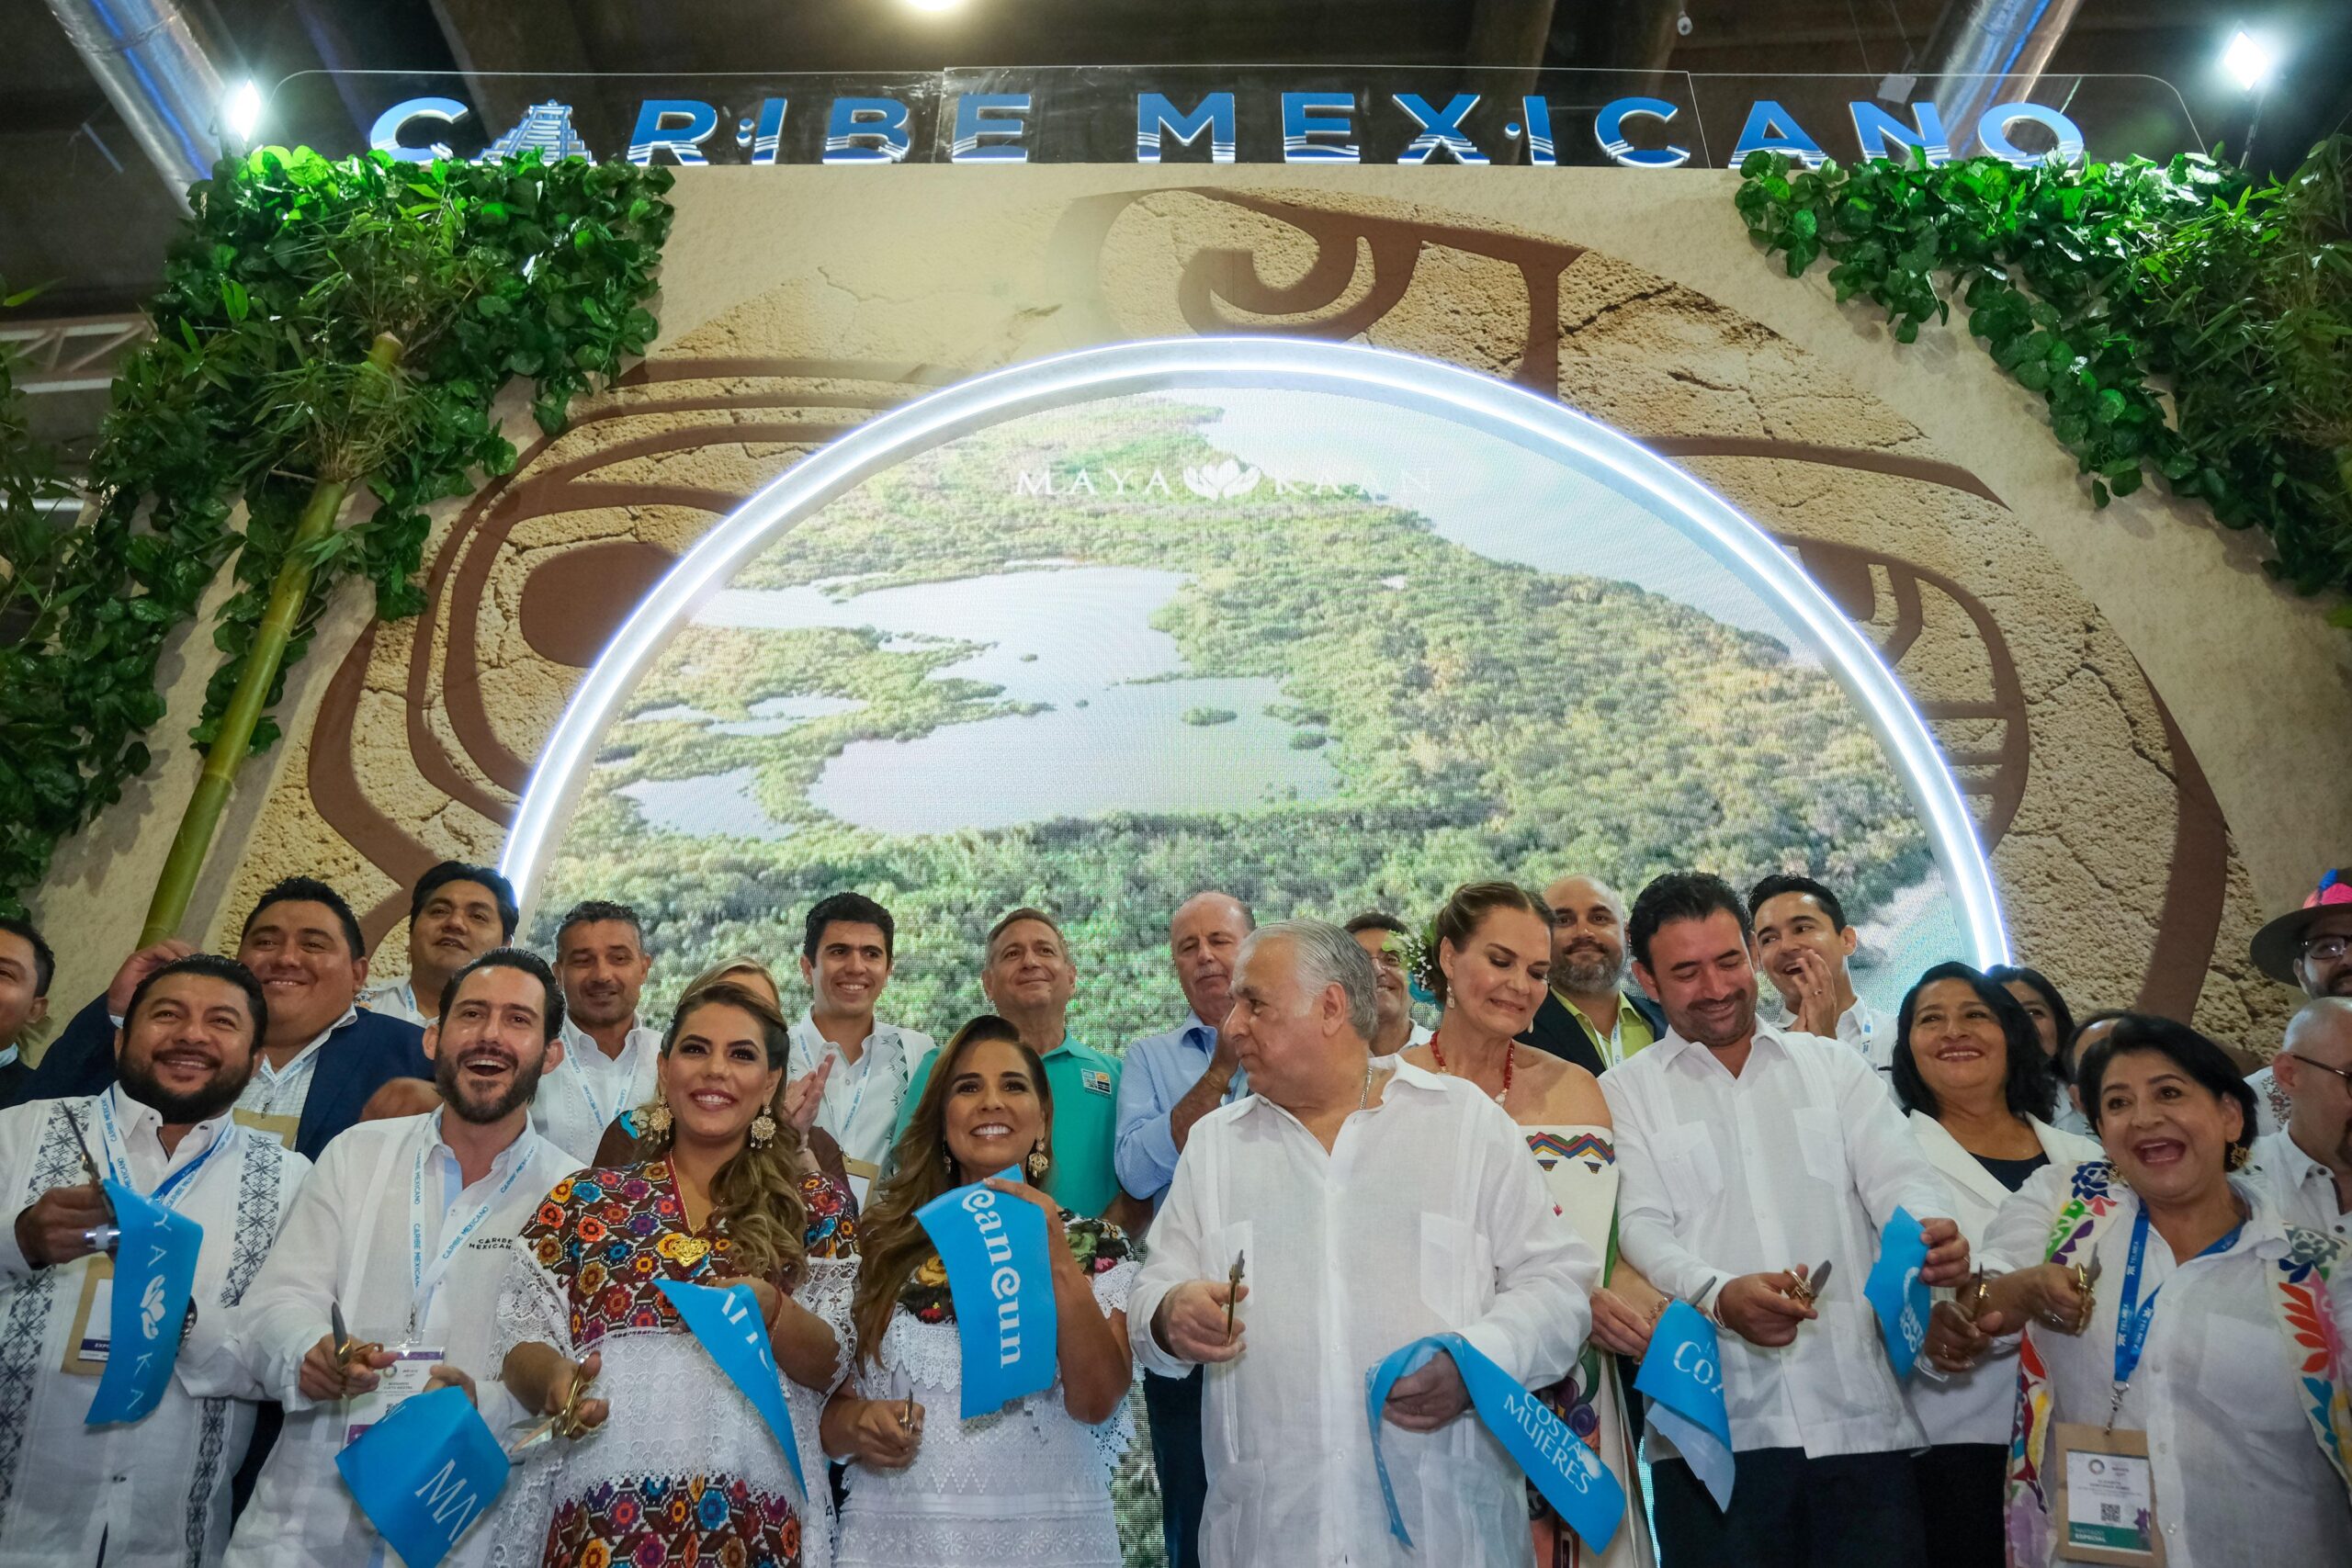 Destaca el Caribe Mexicano en el tianguis turístico de Acapulco